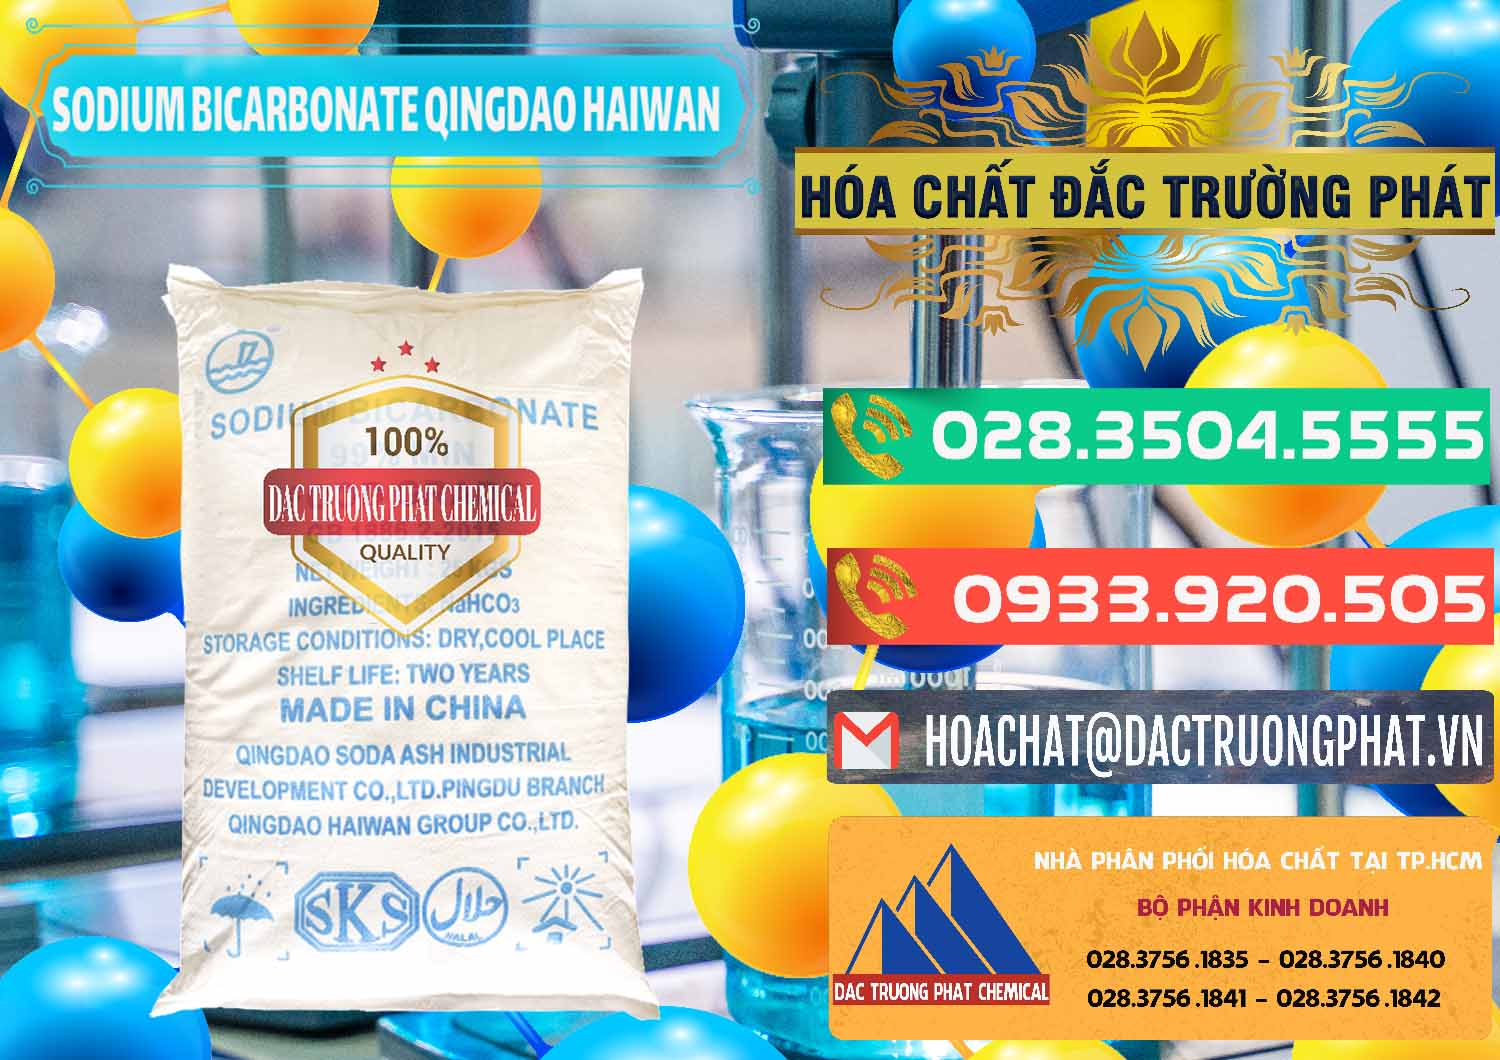 Chuyên bán và cung ứng Sodium Bicarbonate – Bicar NaHCO3 Food Grade Qingdao Haiwan Trung Quốc China - 0258 - Cty cung cấp _ bán hóa chất tại TP.HCM - congtyhoachat.com.vn